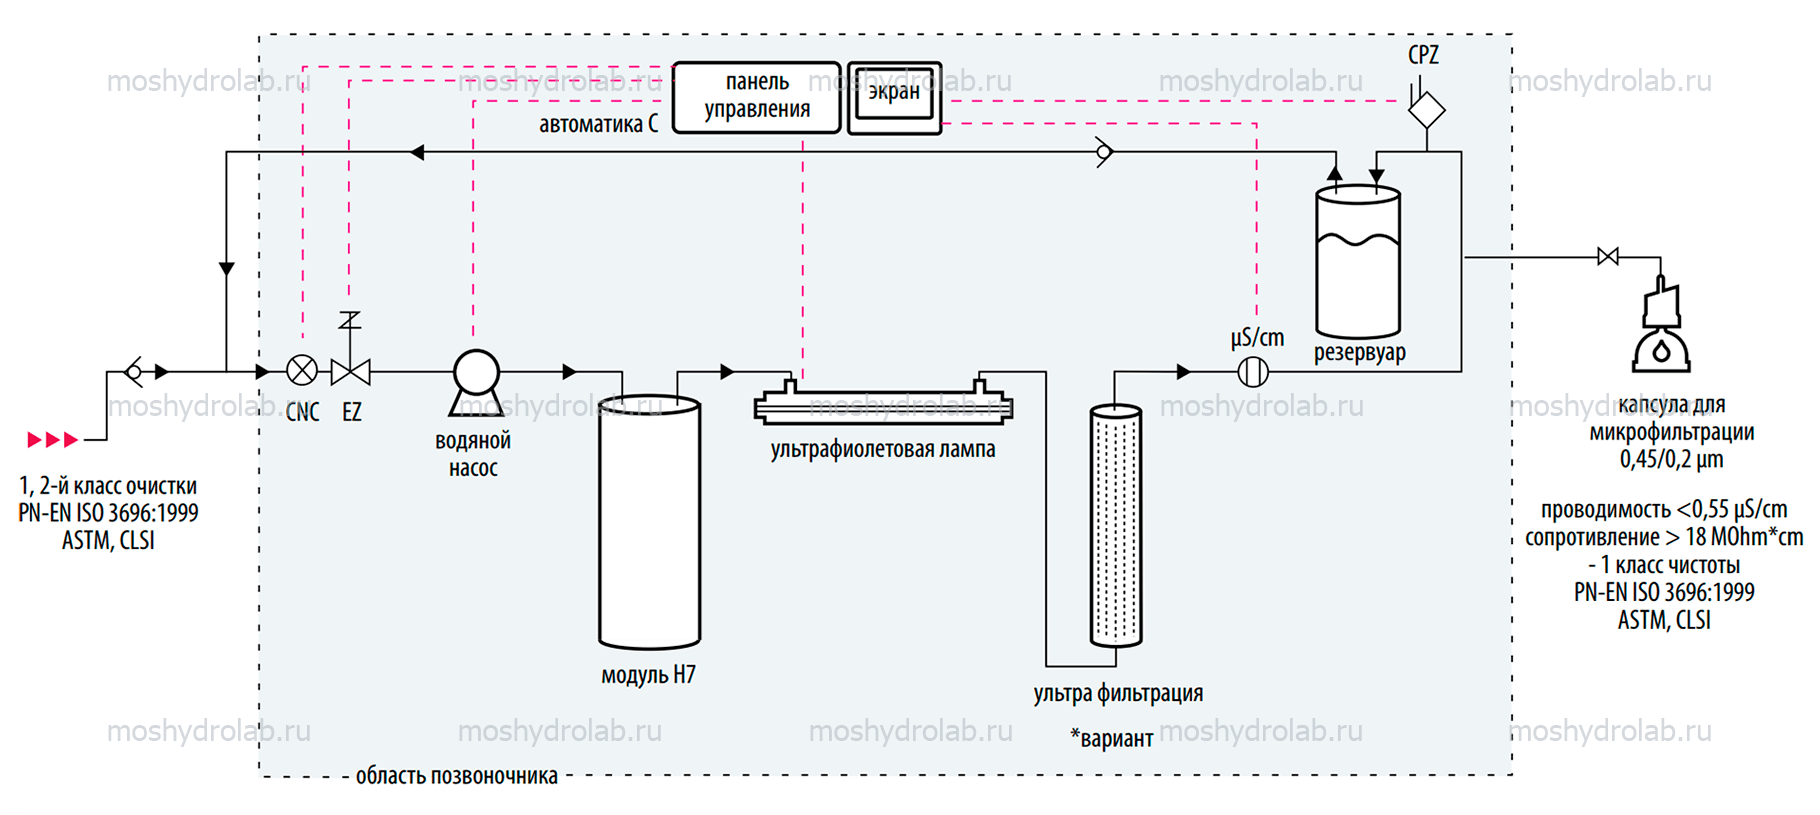 Стать дилером Hydrolab: системы подготовки воды для лаборатории